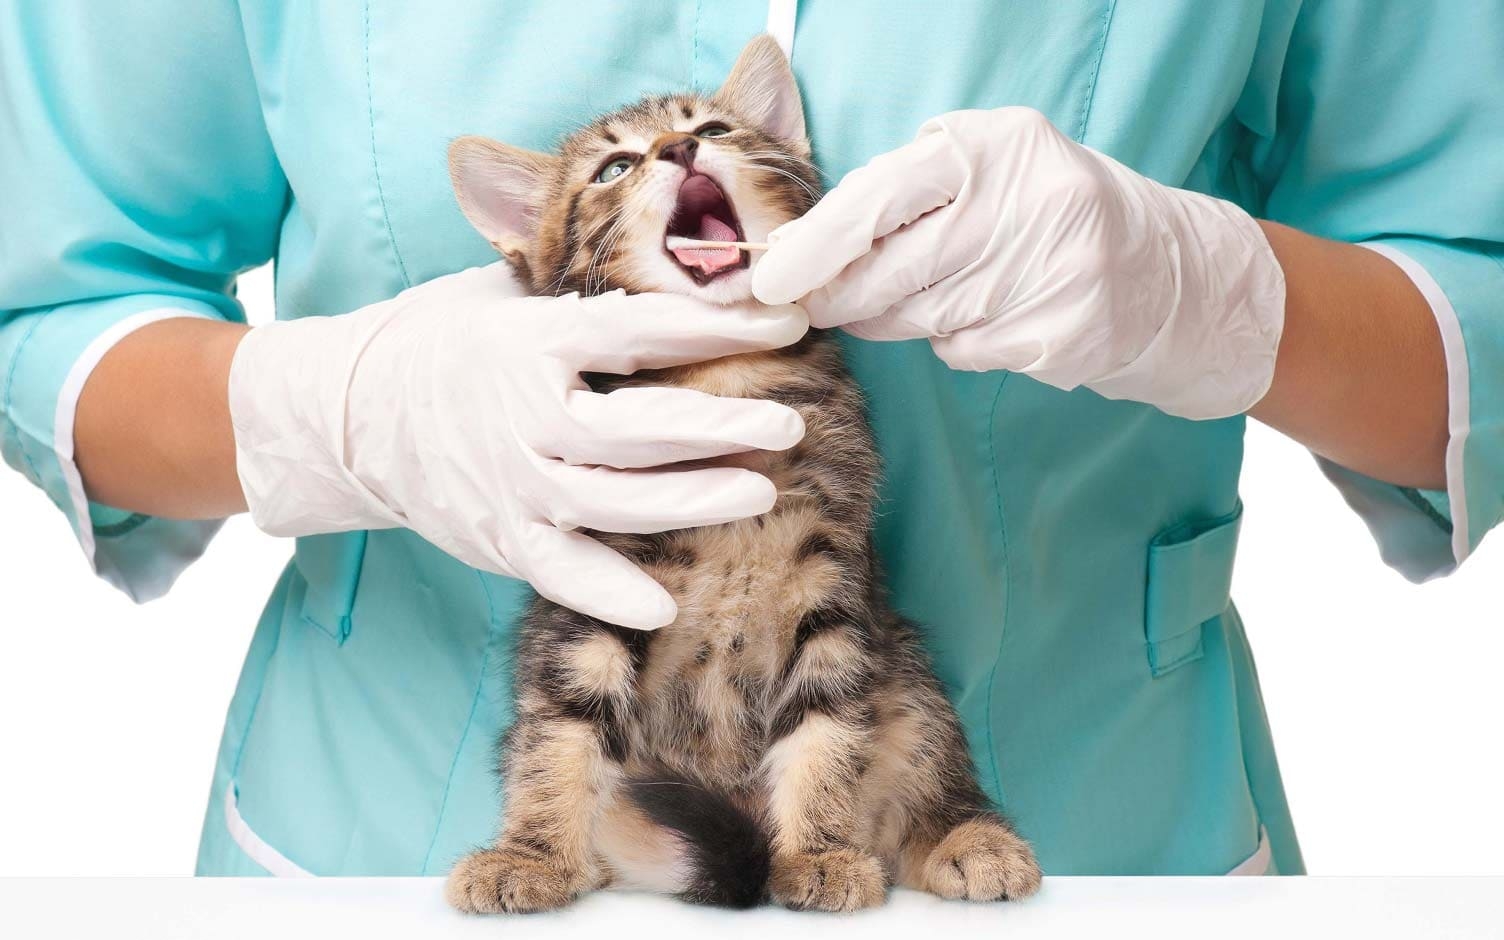 Hablemos de la salud dental de los gatos